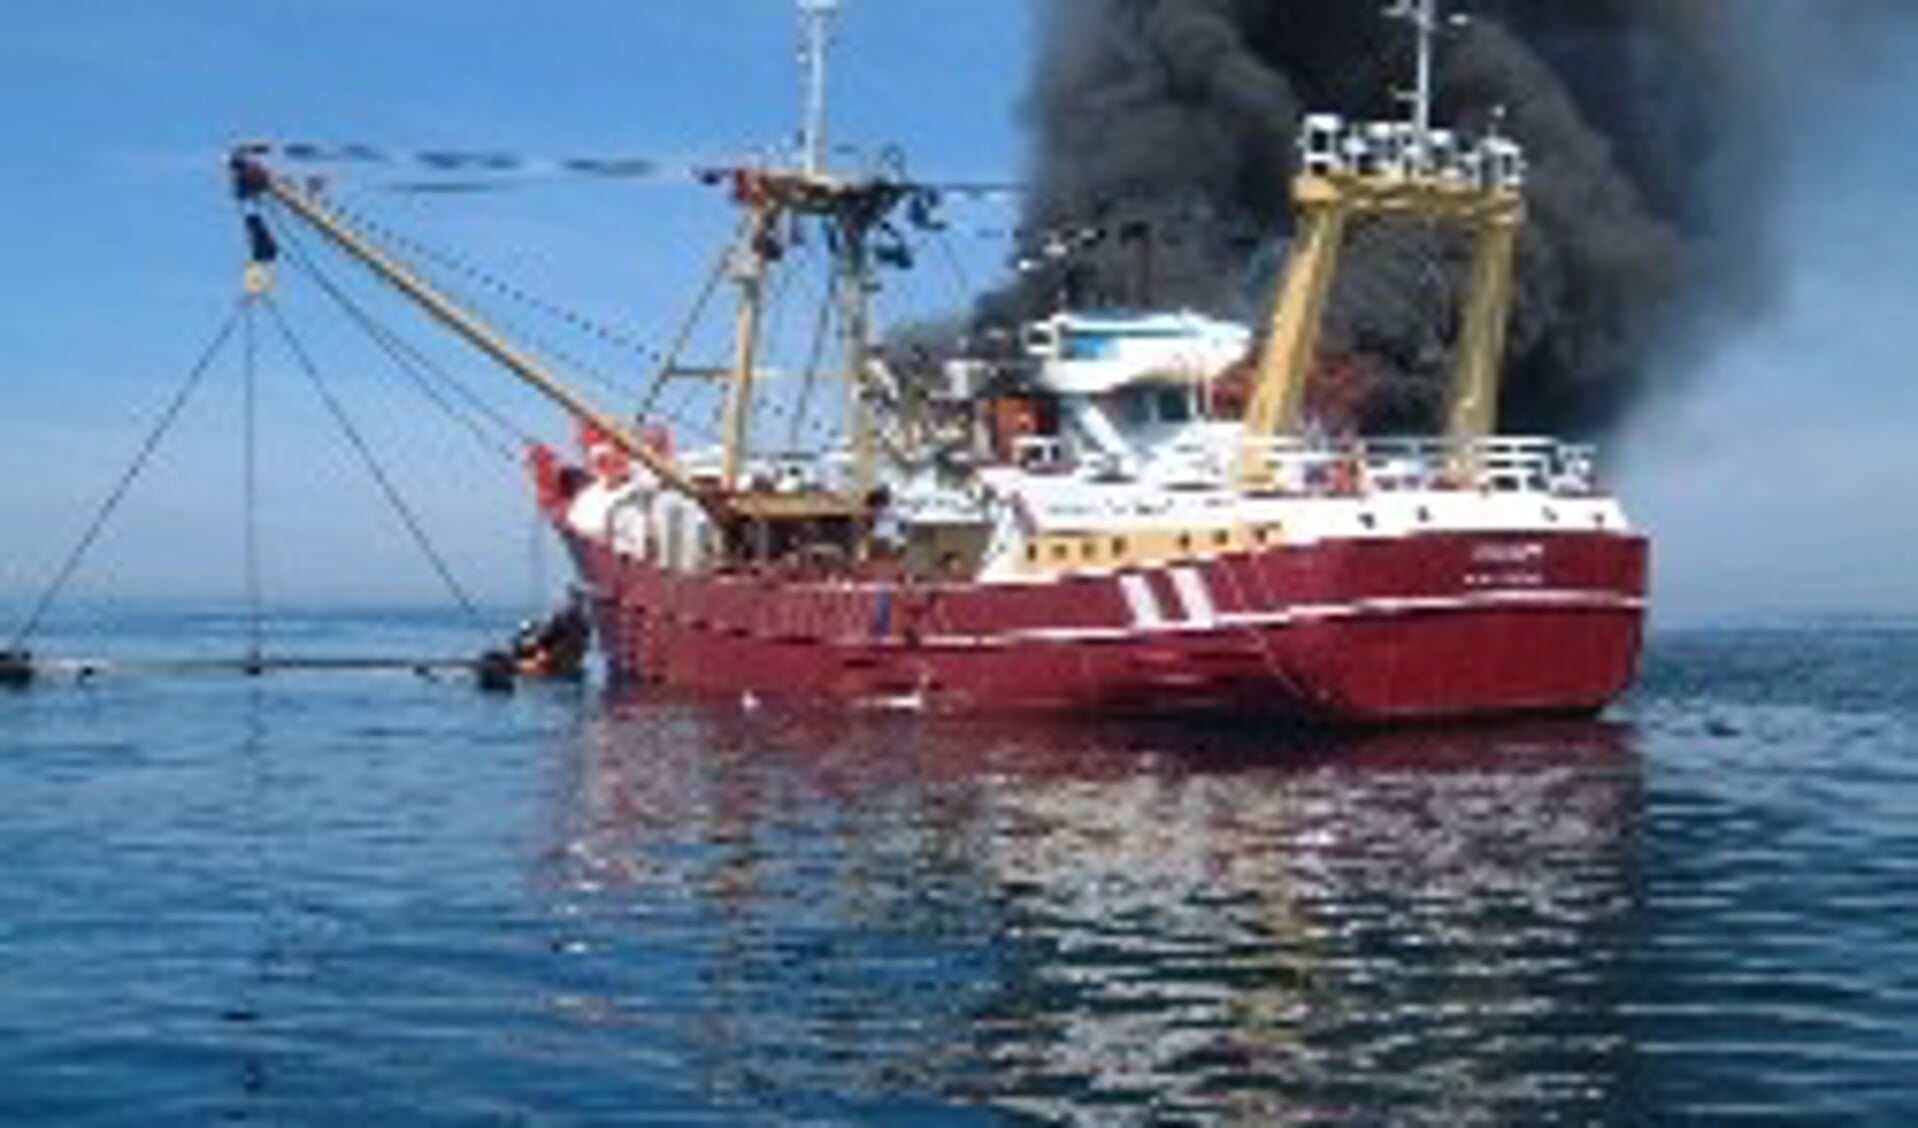 De kotter Johannes uit Stellendam staat in brand. De bemanning staat voorop het schip om hulp te roepen. (foto Rutgert O